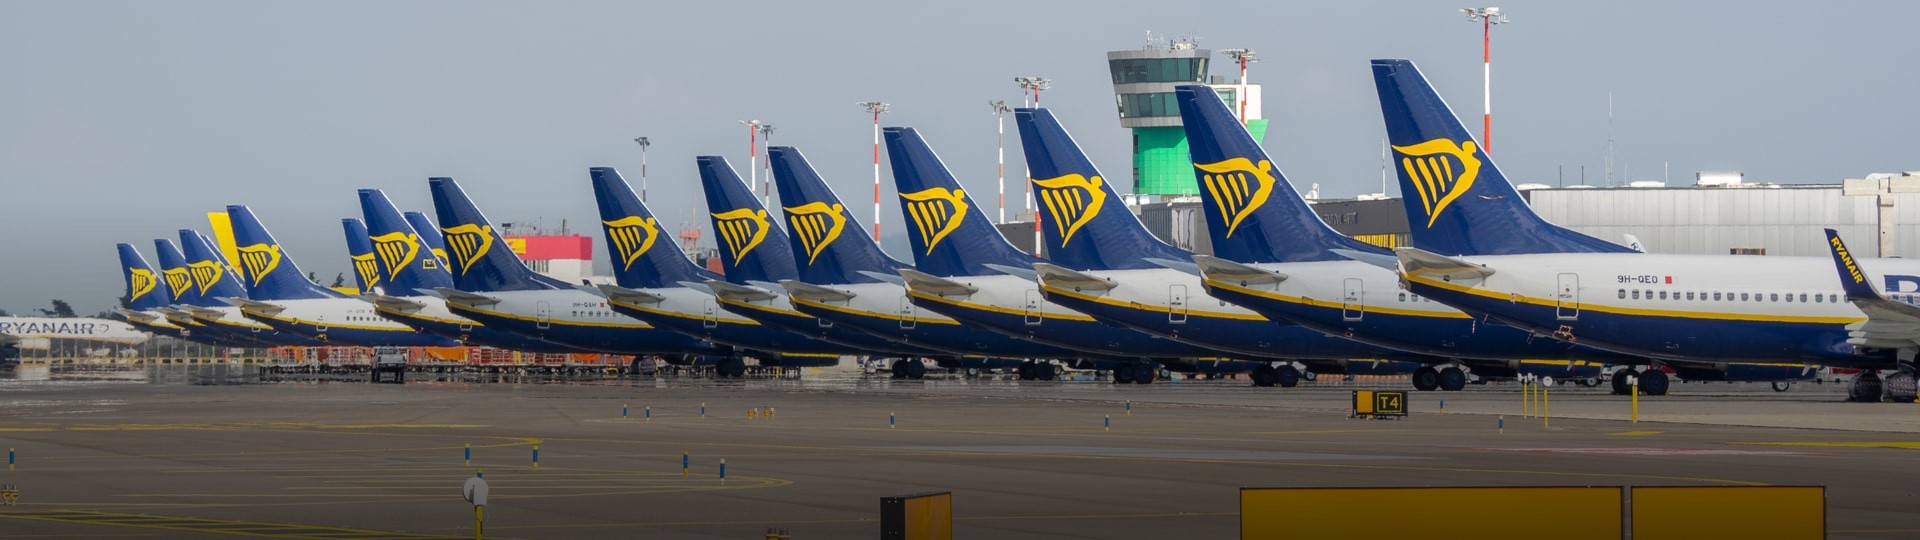 Ryanair má rekordní ztrátu, odvětví už se ale podle něj zotavuje z pandemie